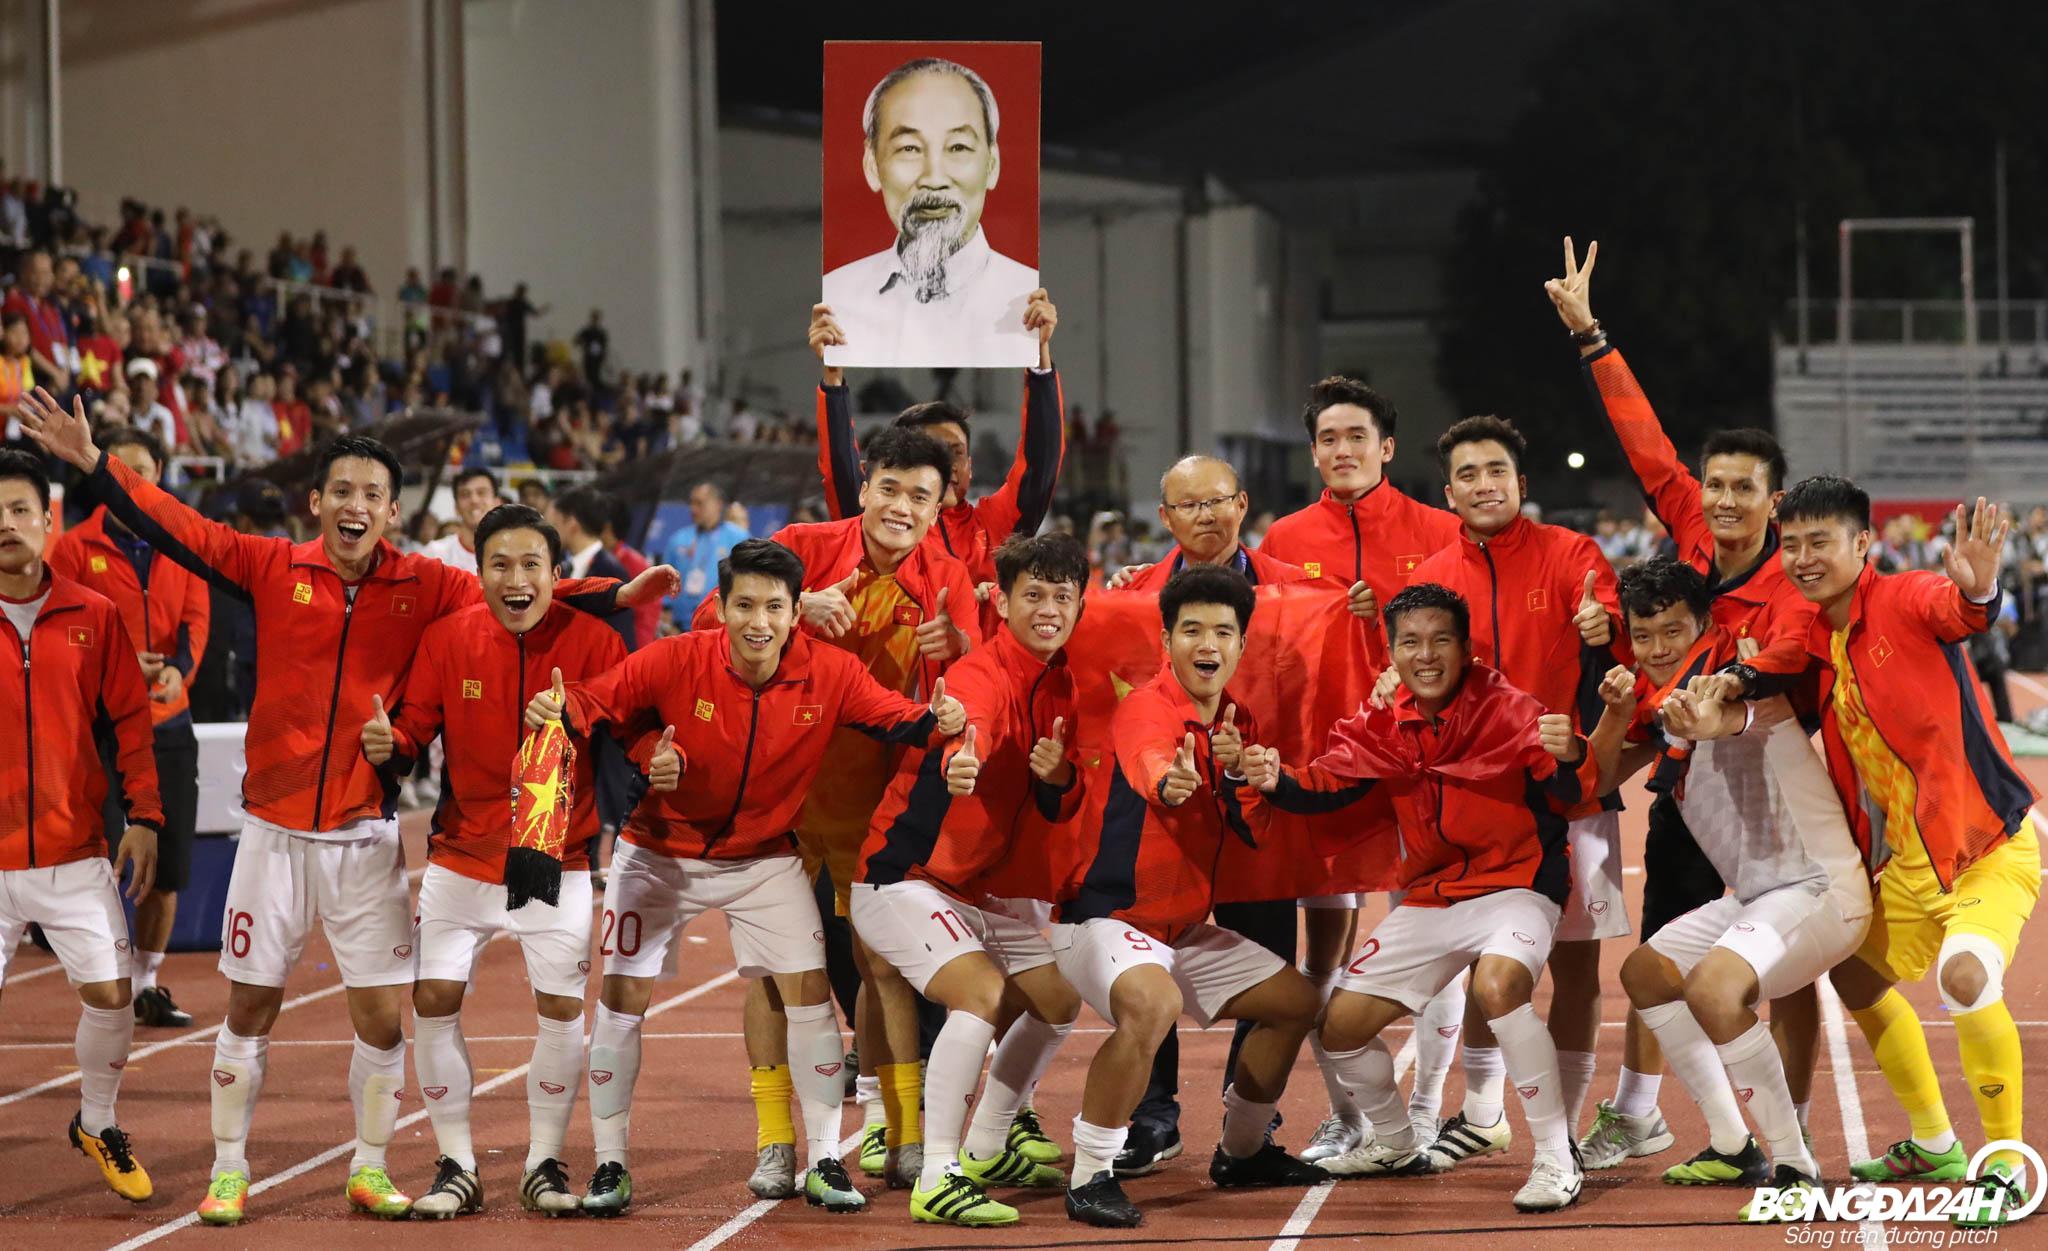 Tháng 5-2022 sẽ là thời điểm rực rỡ với các sự kiện bóng đá trên toàn thế giới, đặc biệt là giải U23 châu Á sẽ diễn ra tại Việt Nam. Để không bỏ lỡ bất kỳ khoảnh khắc nào, hãy ghé thăm hình ảnh liên quan đến giải đấu này.